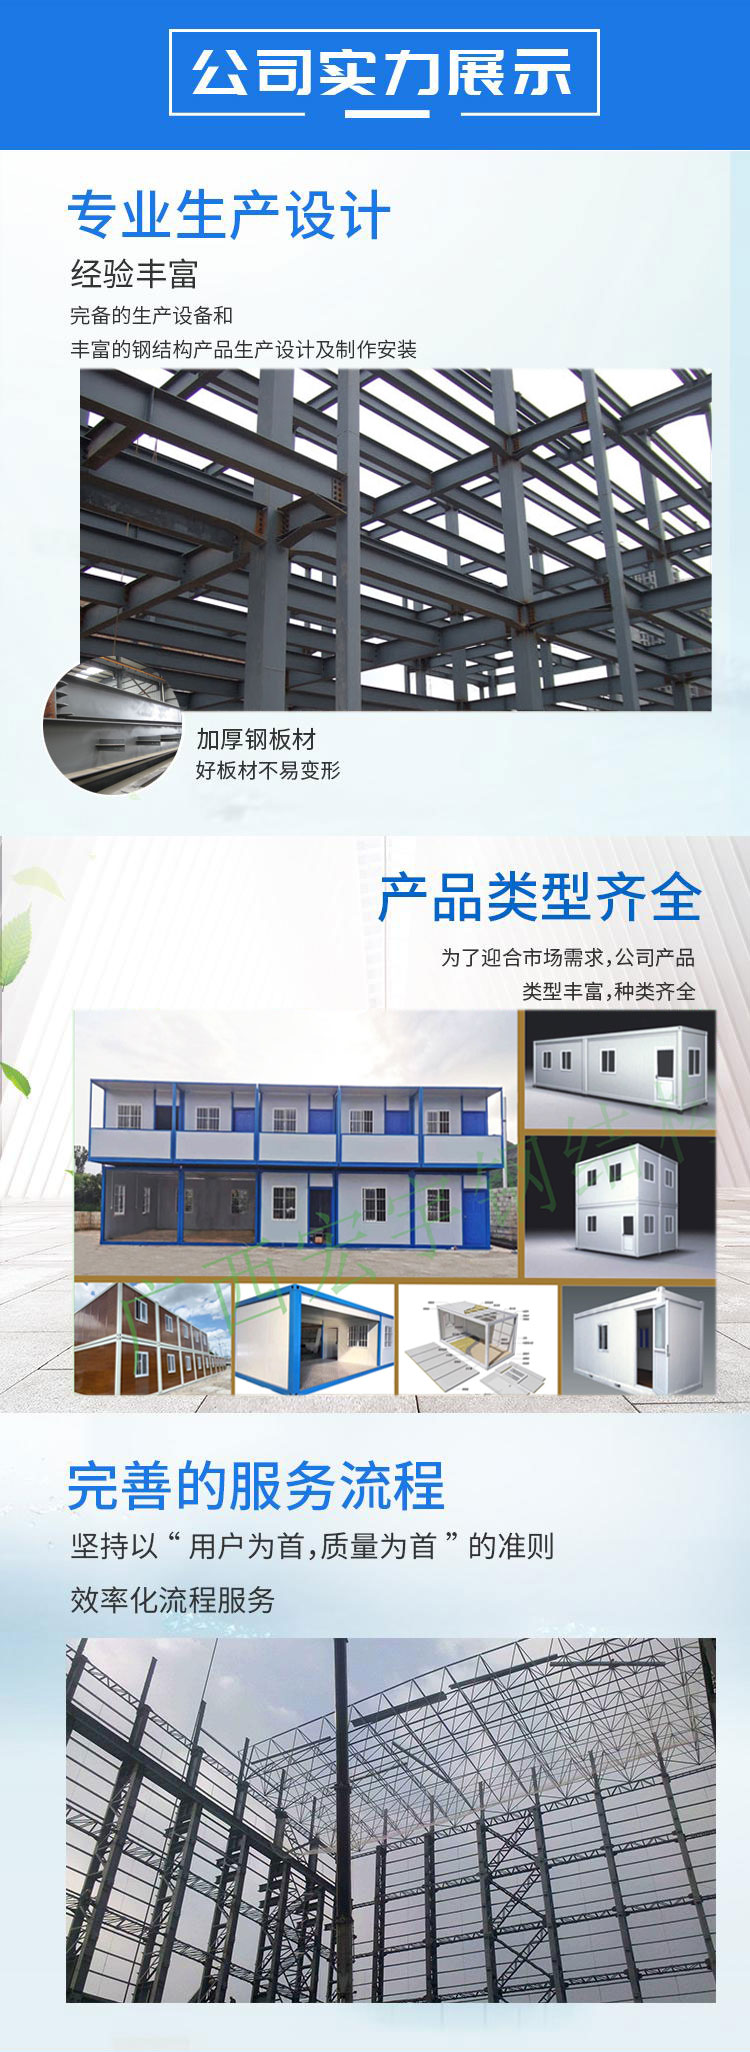 广西钢结构公司实力展示.jpg